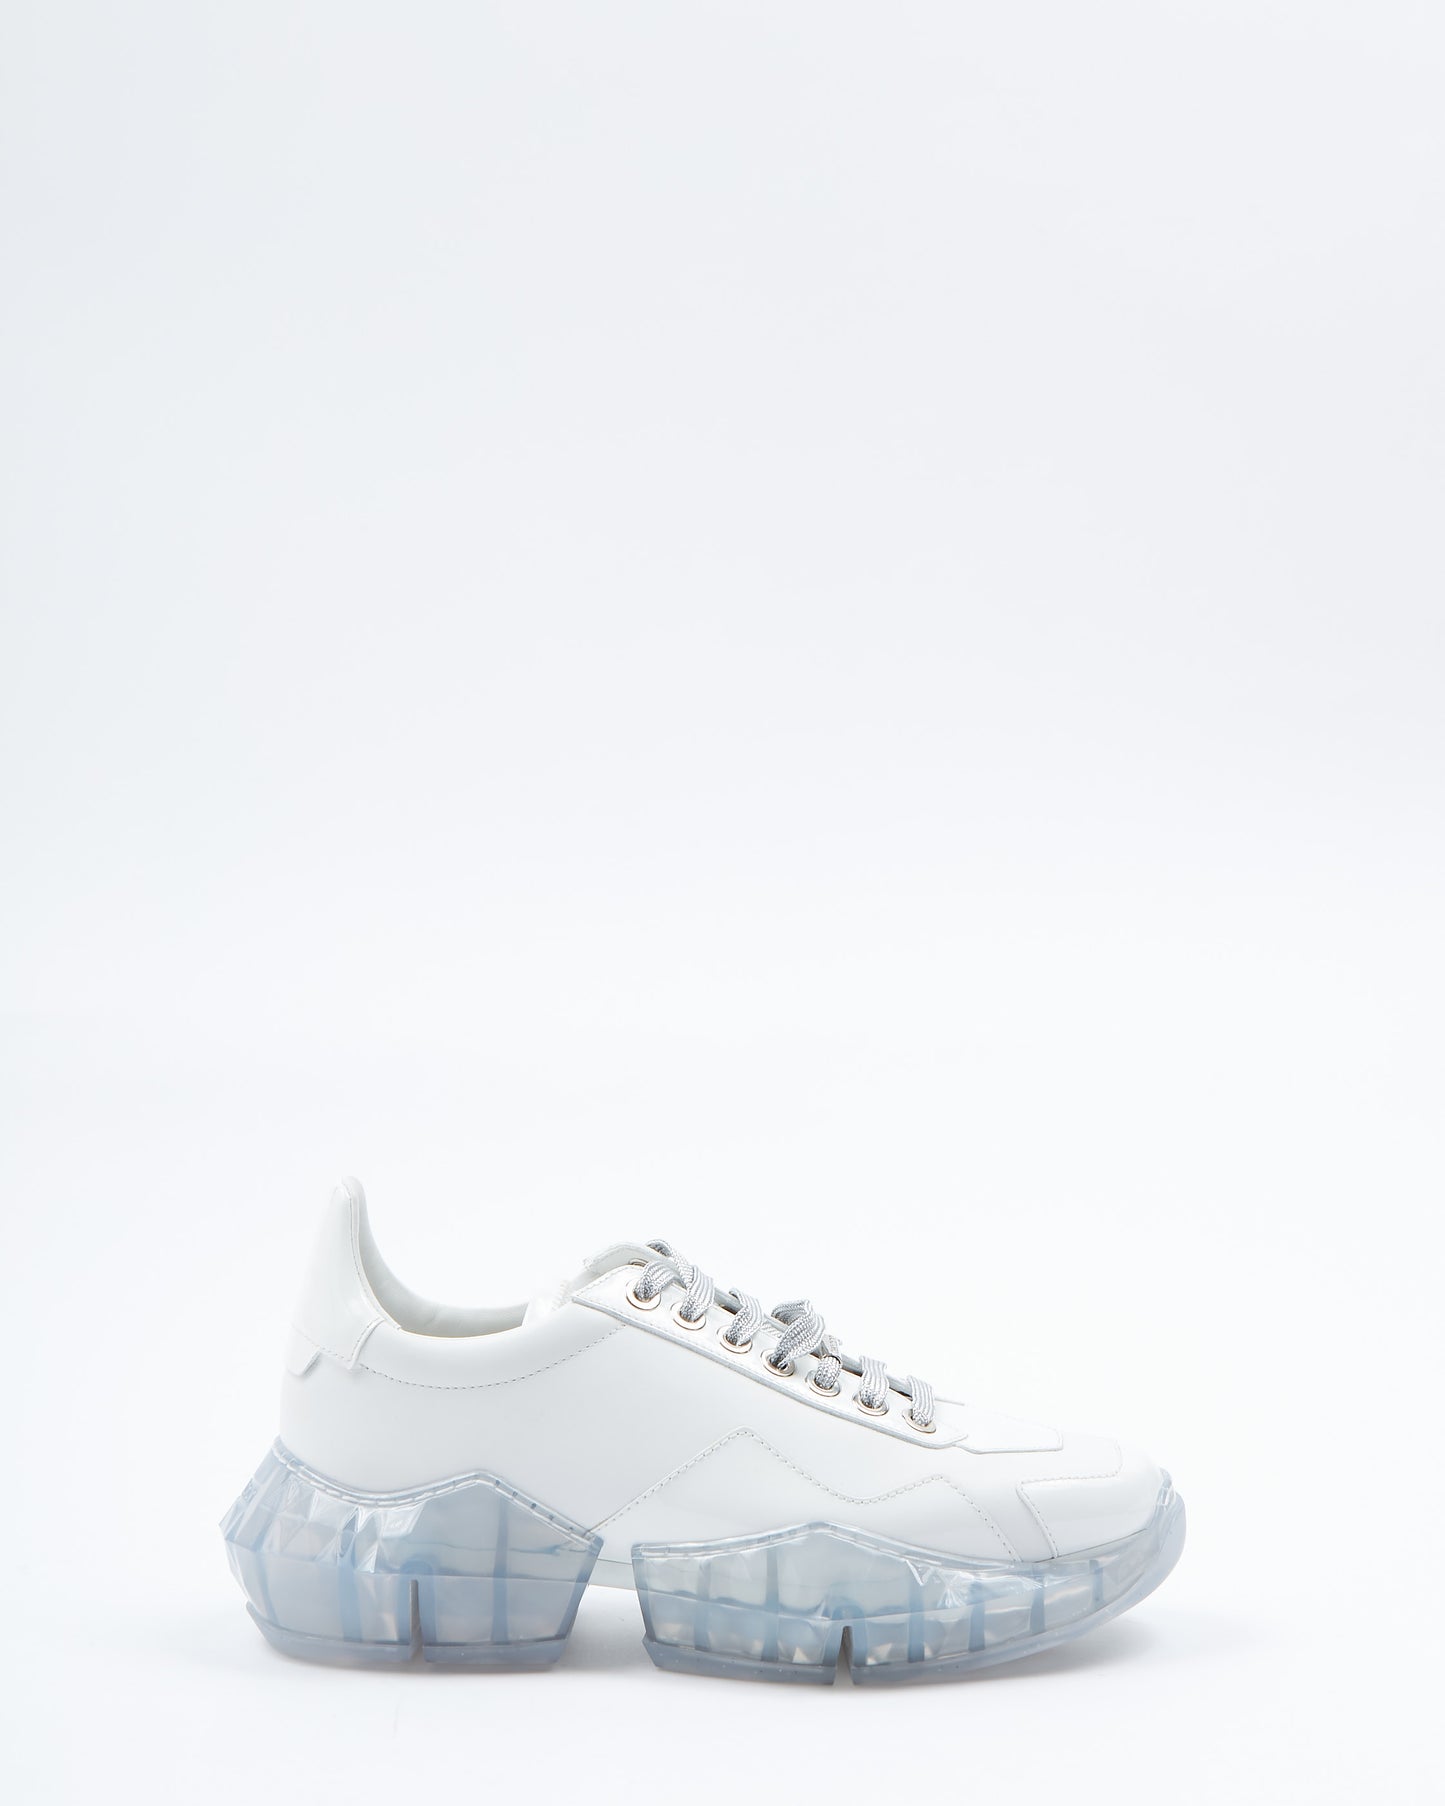 Jimmy Choo White Low Top Sneaker - 40